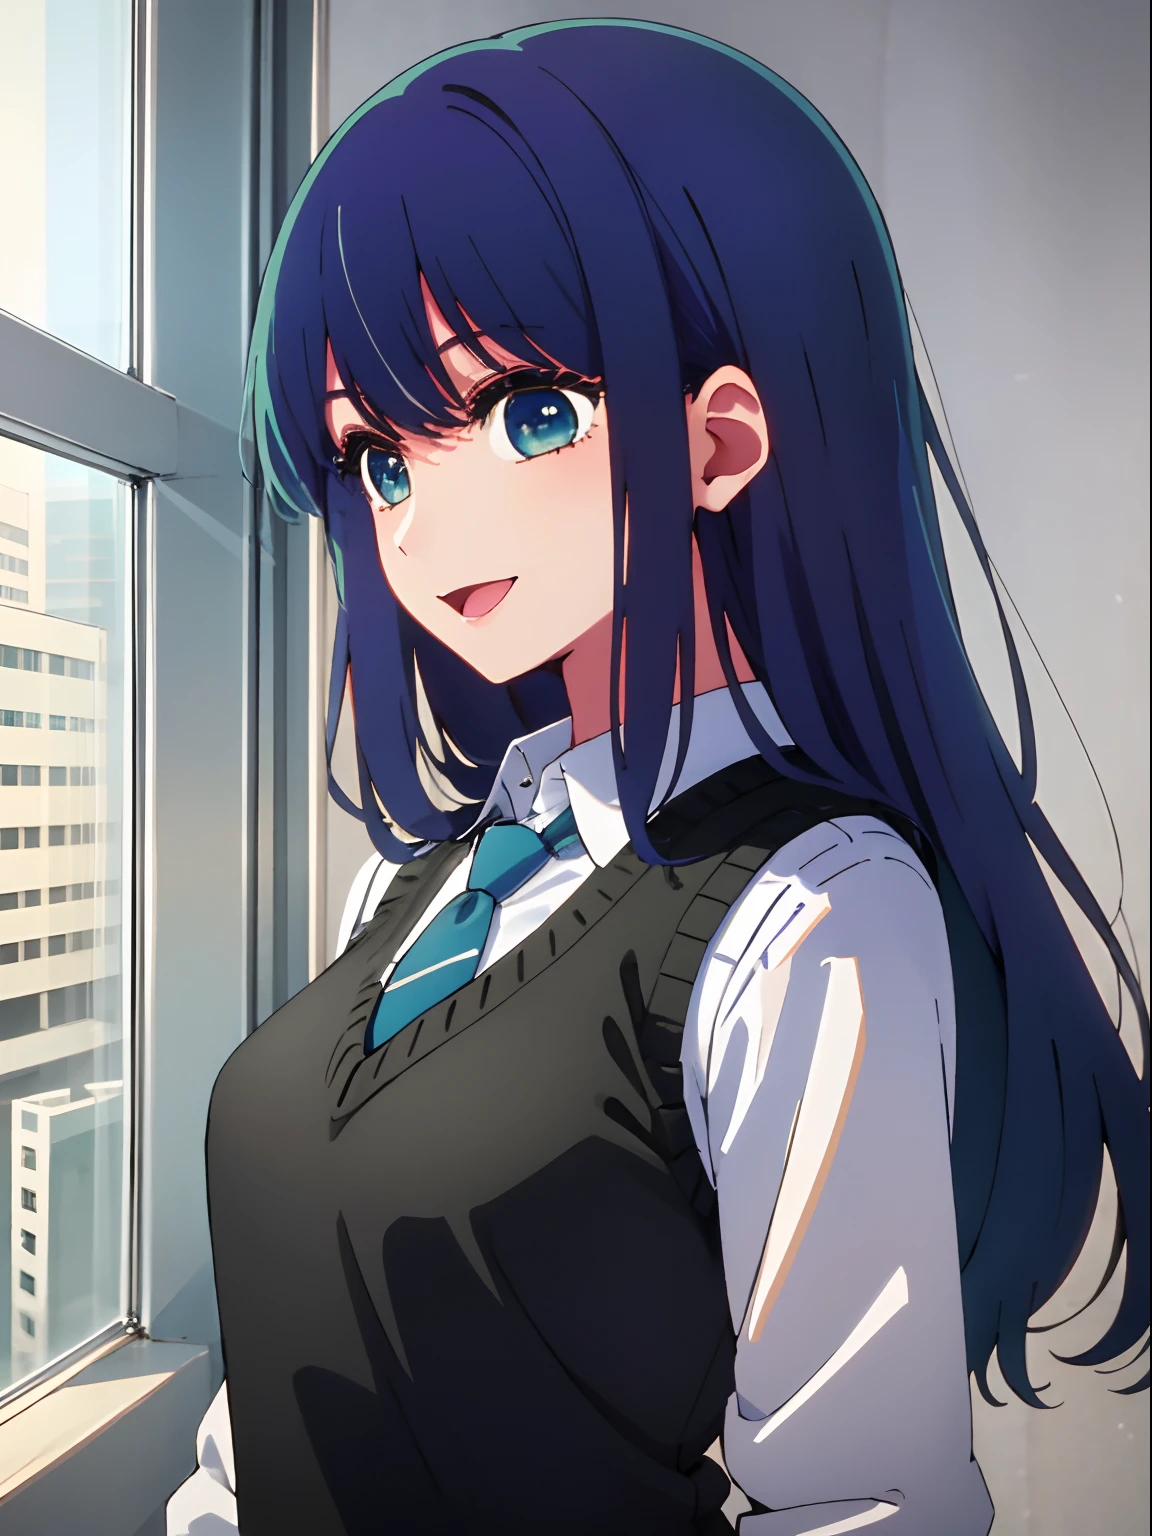 bela iluminação, 1 garota em, só, Akane, camisa branca, Colete suéter, colete preto, gravata azul, ((estilo anime))、((2D))、Um sorriso、Abra sua boca、O de cabelos compridos